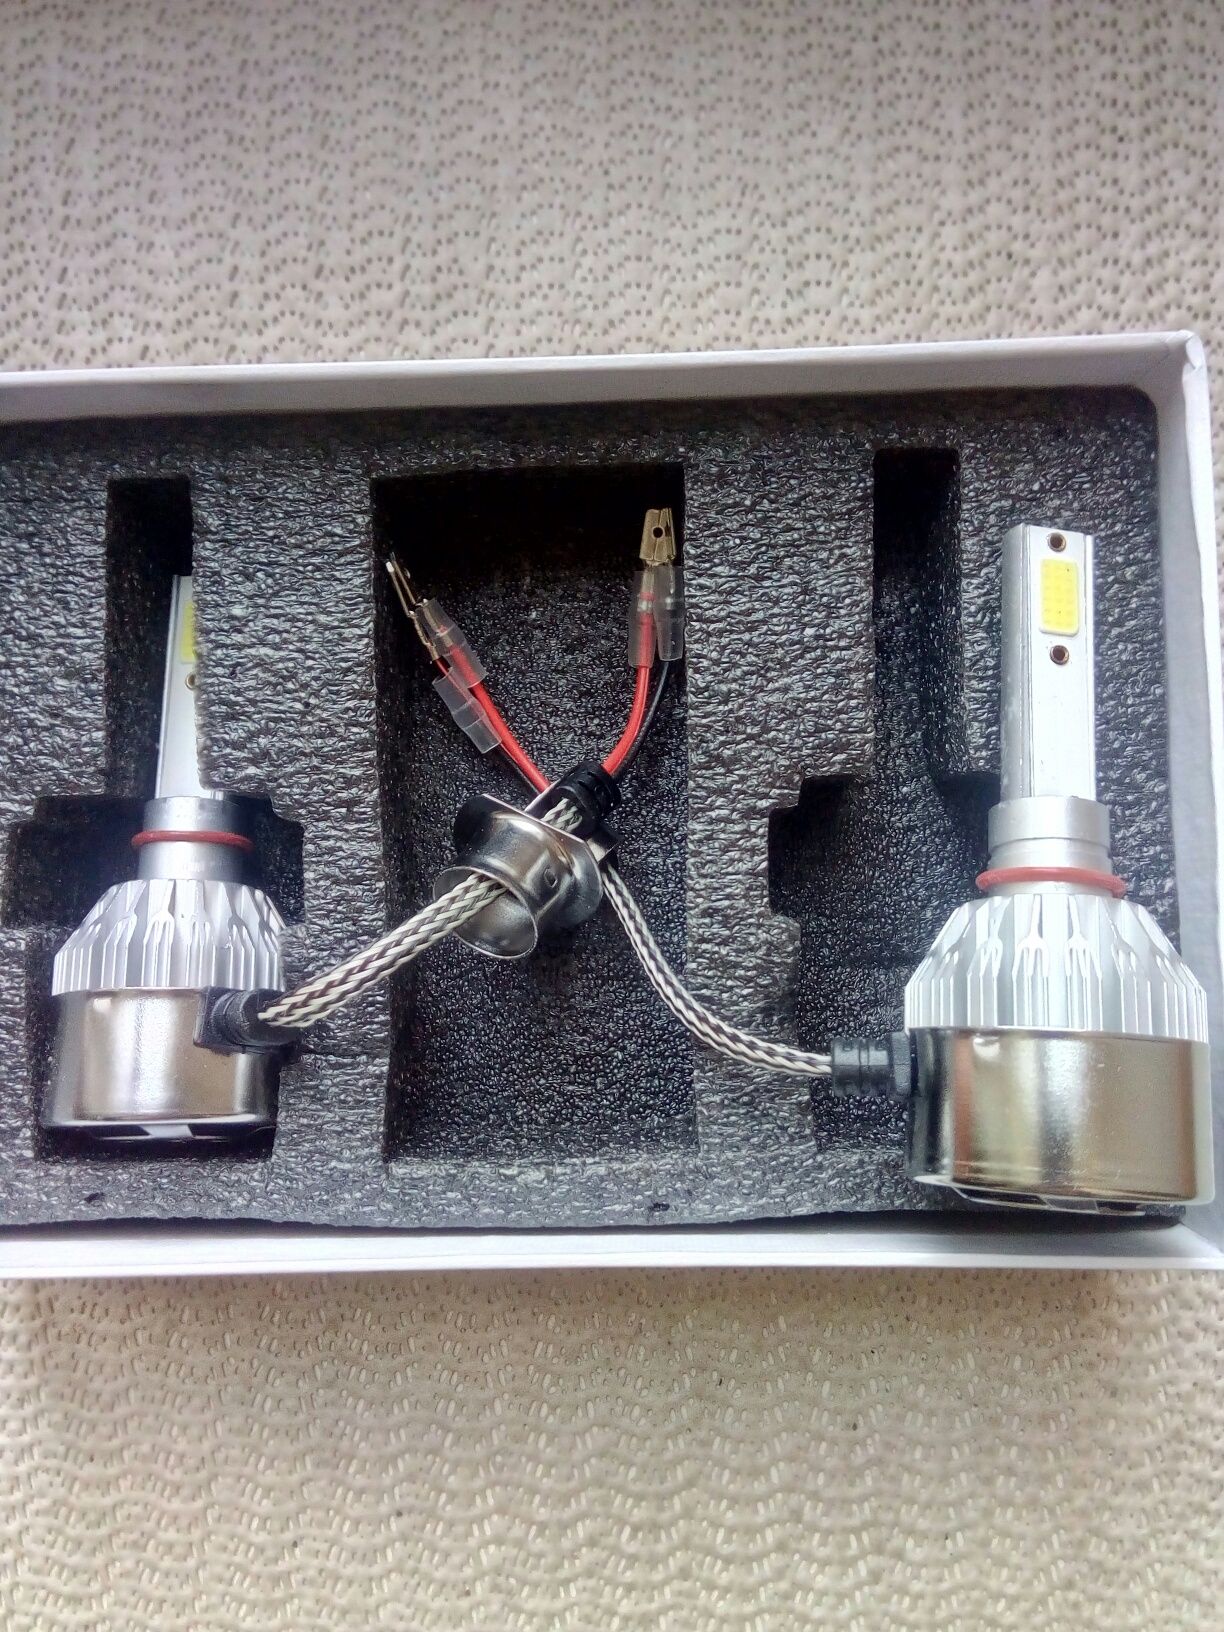 Продам LED лампы фирмы С6 36w/3800 новые в коробке всё как на фотограф